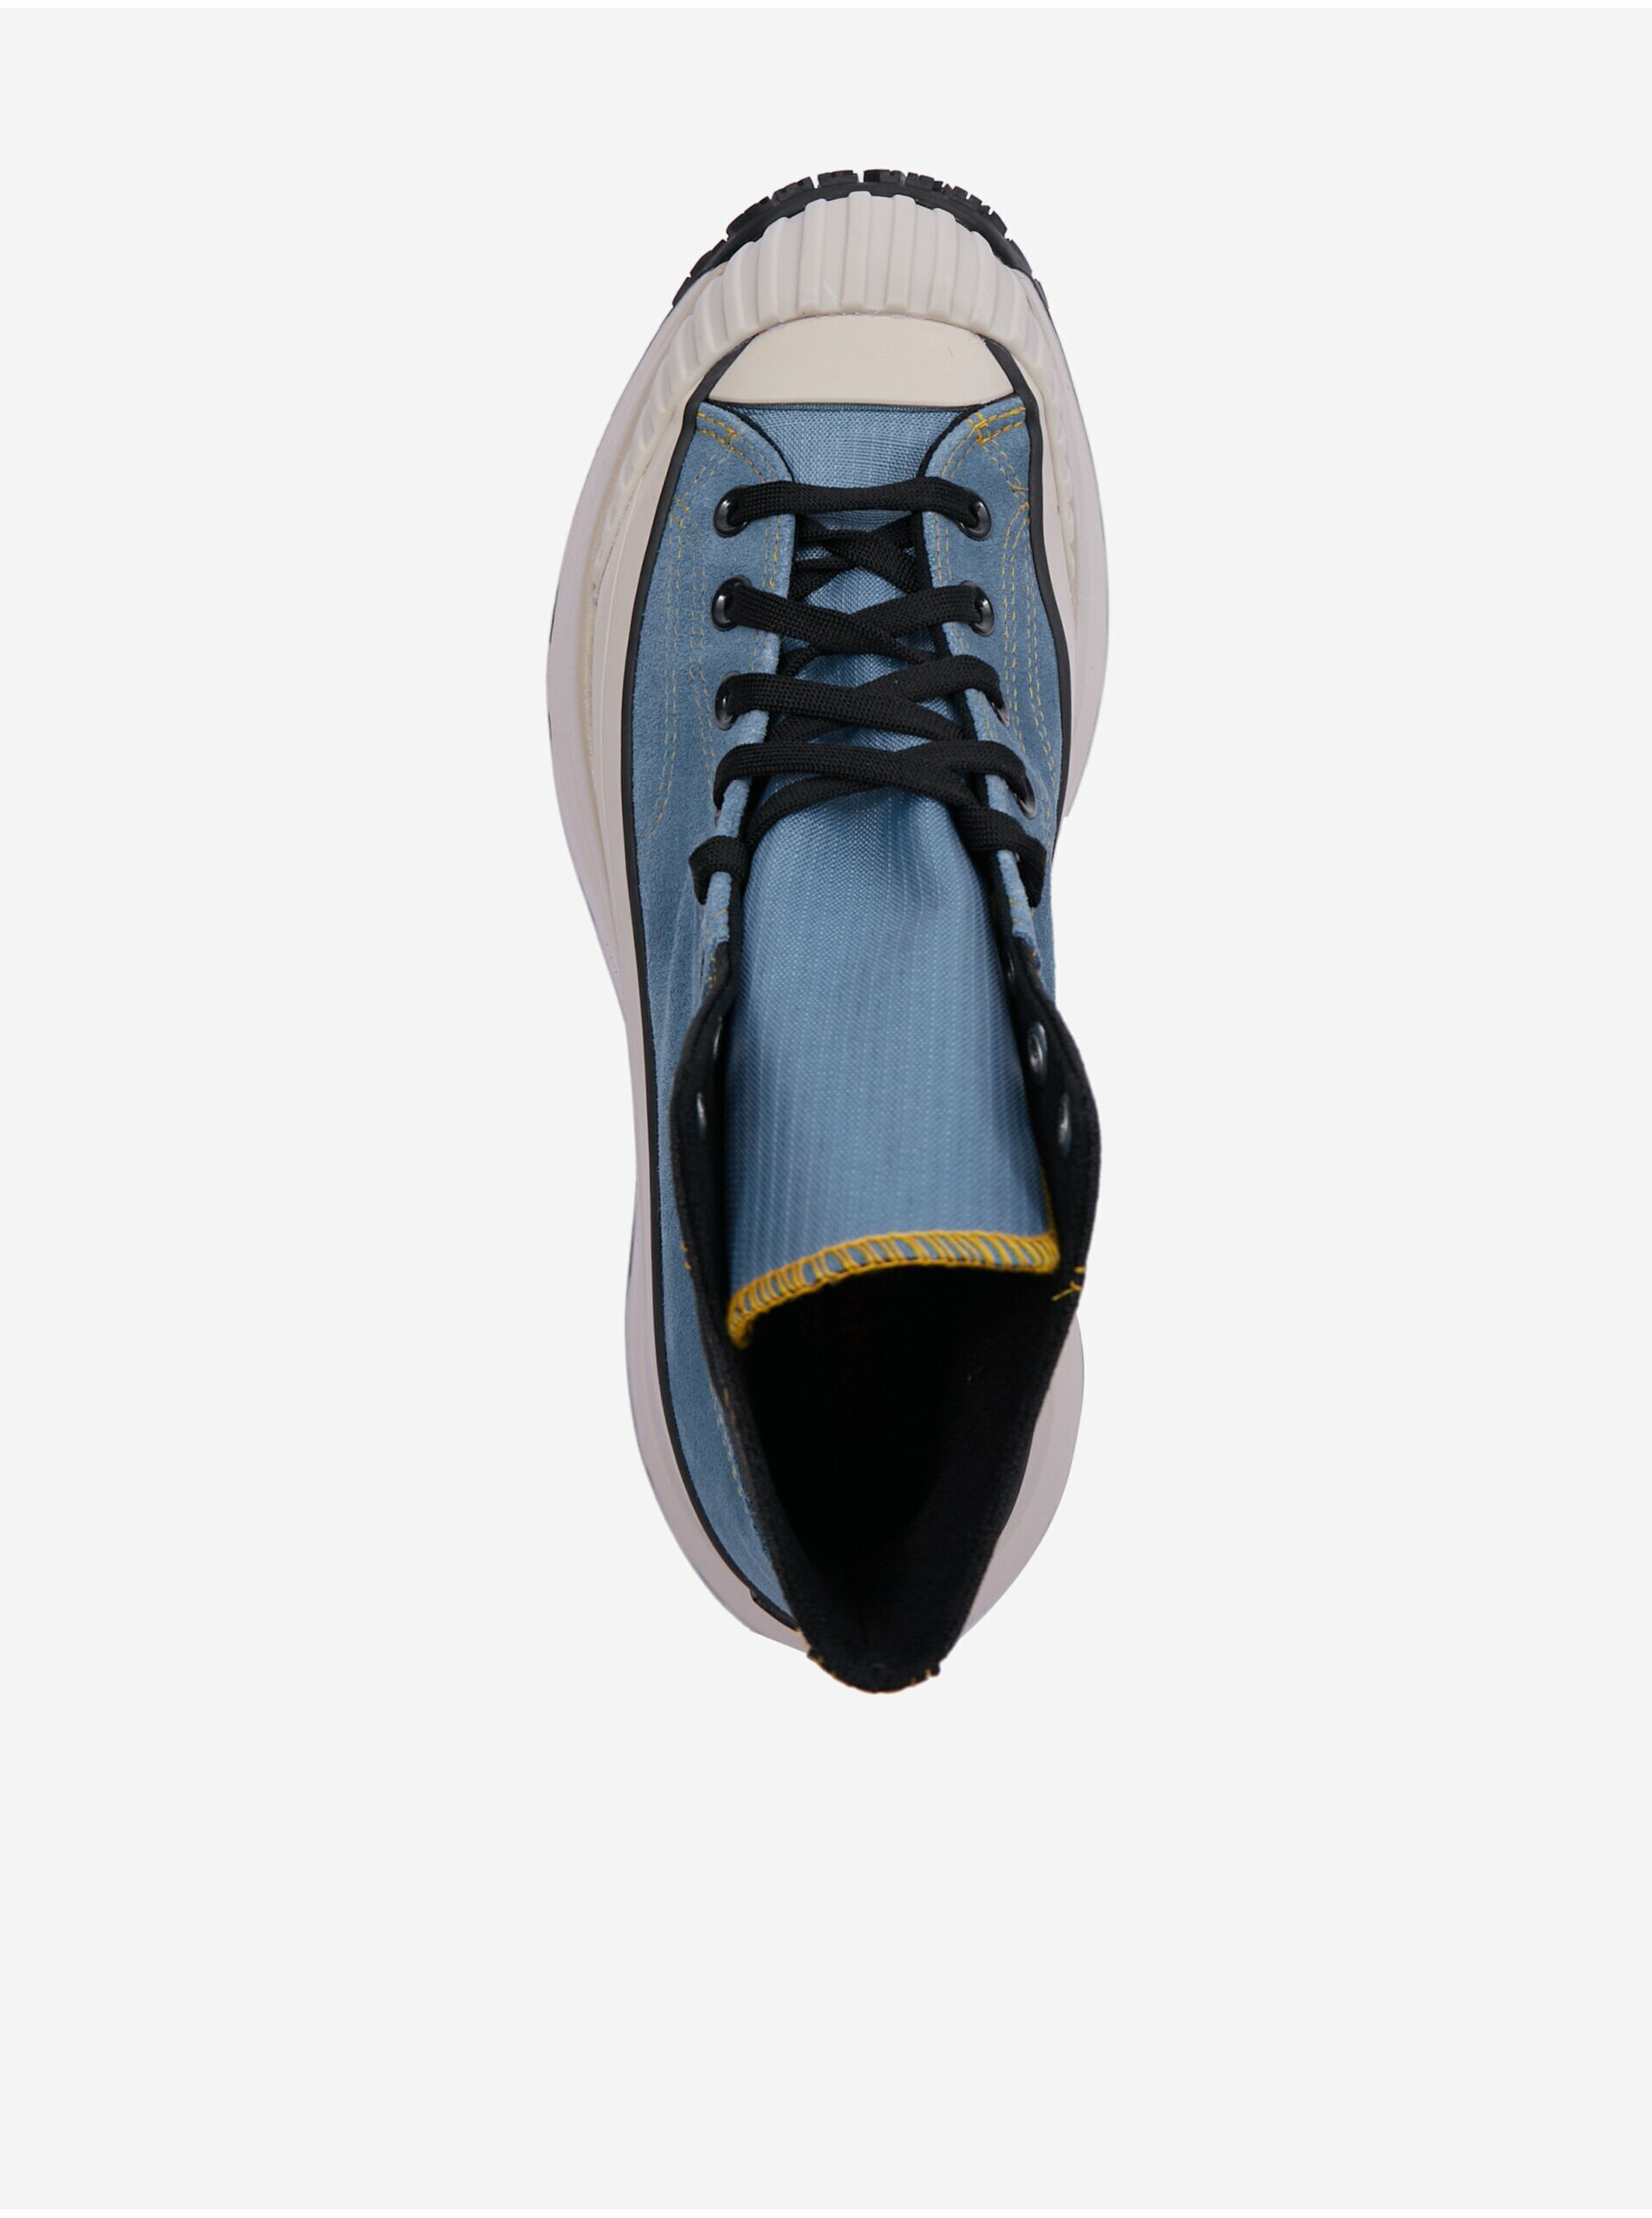 Čierno-modré pánske členkové tenisky so semišovými detailmi Converse Chuck 70 AT-CX City Workwear